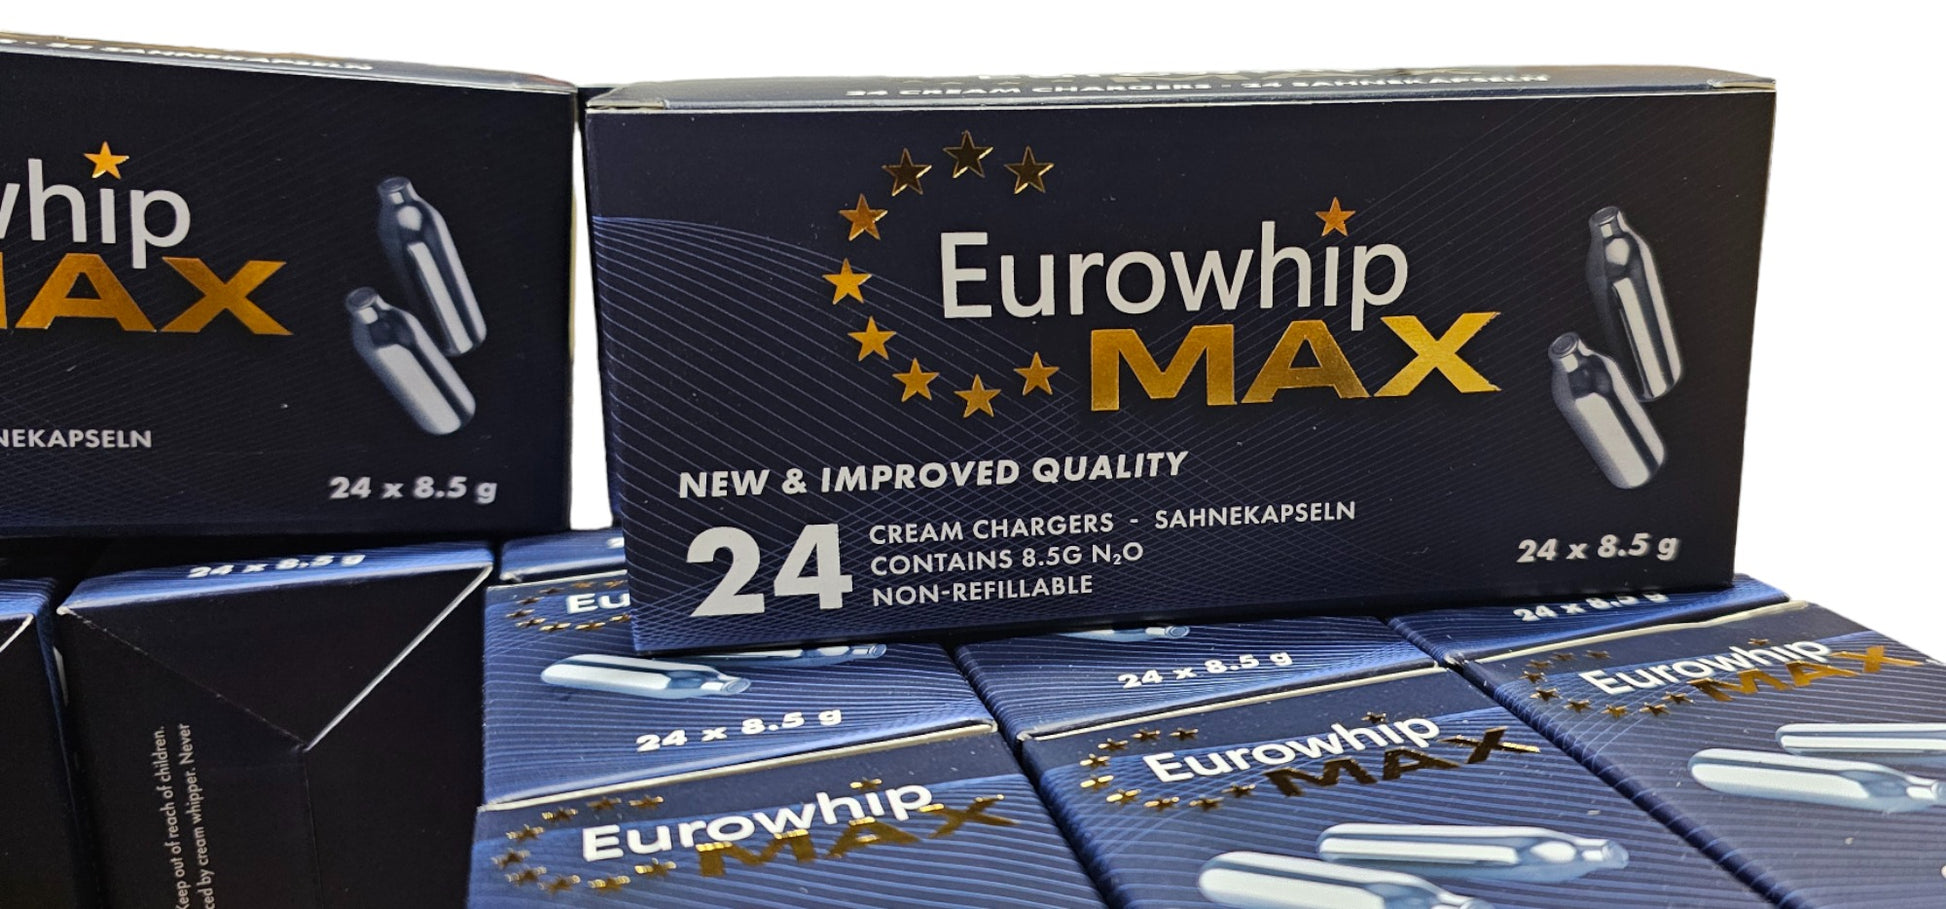 senaste innovationen inom gräddpatroner med vår exklusiva 'Eurowhip MAX - Golden Edition'. Inspirerad av vår populära Eurowhip-serie, introducerar vi nu 'MAX' - en premiumversion som sätter nya standarder för kvalitet